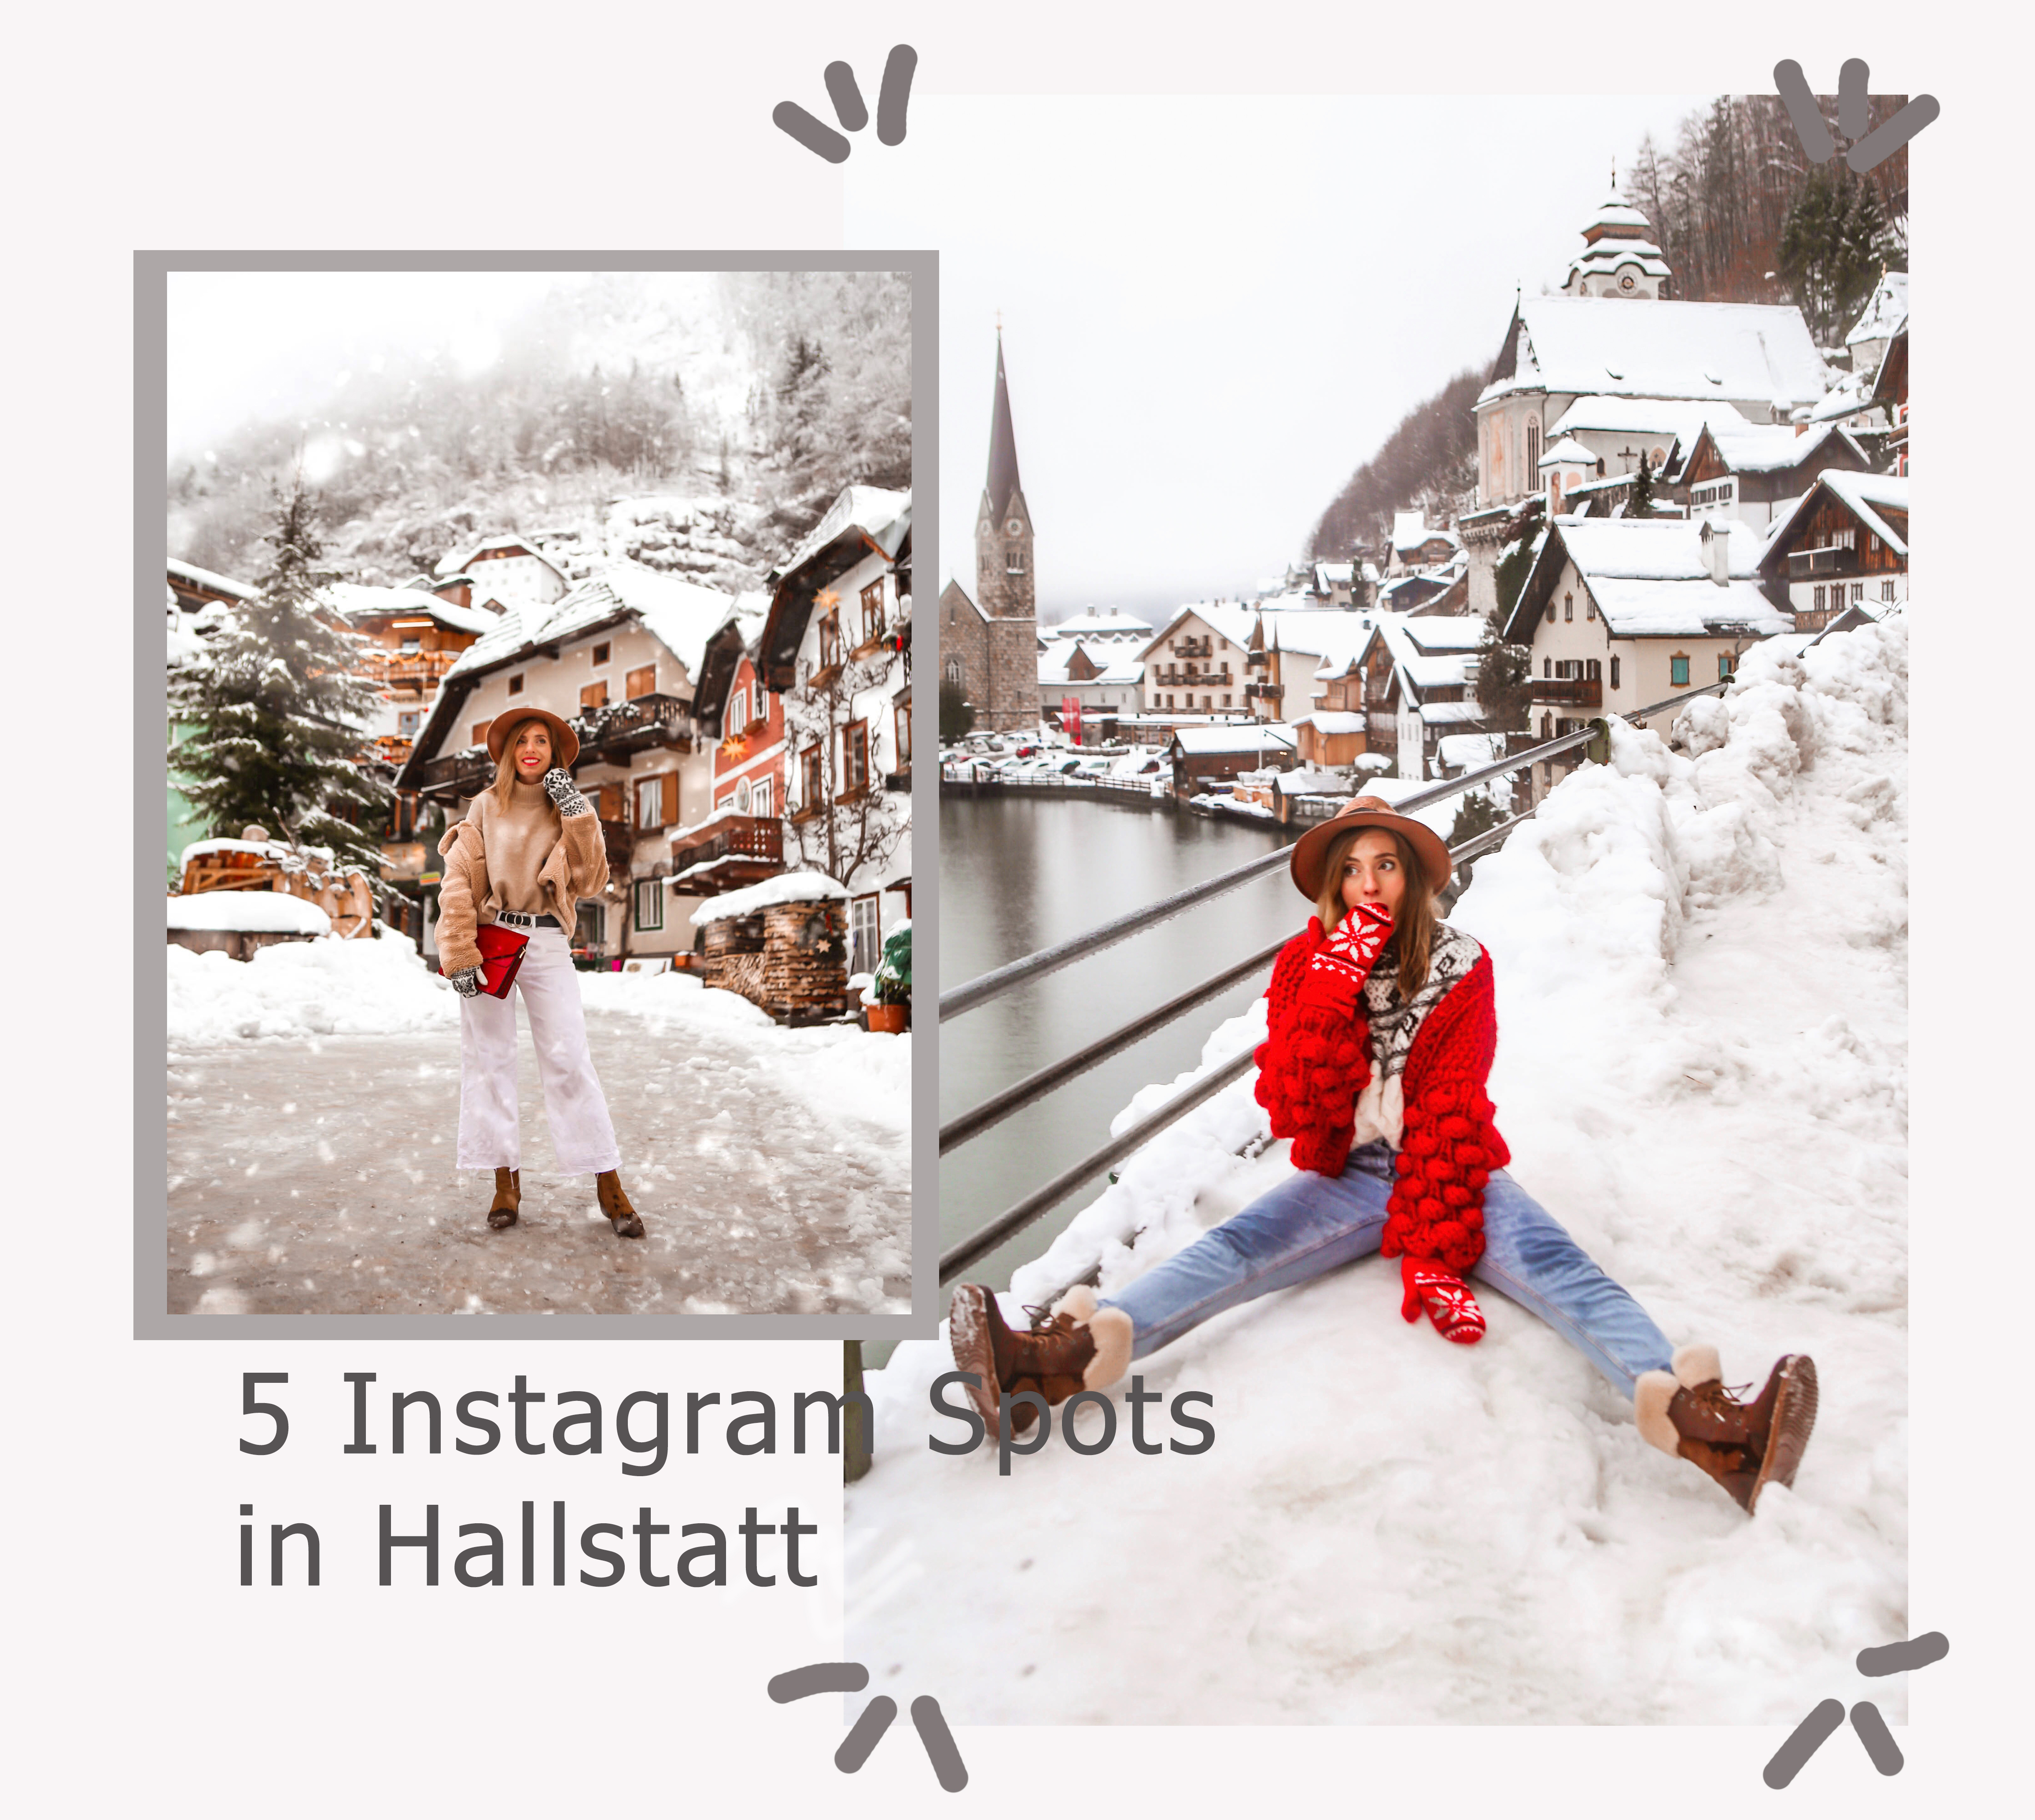 Instagram Spots in Hallstatt